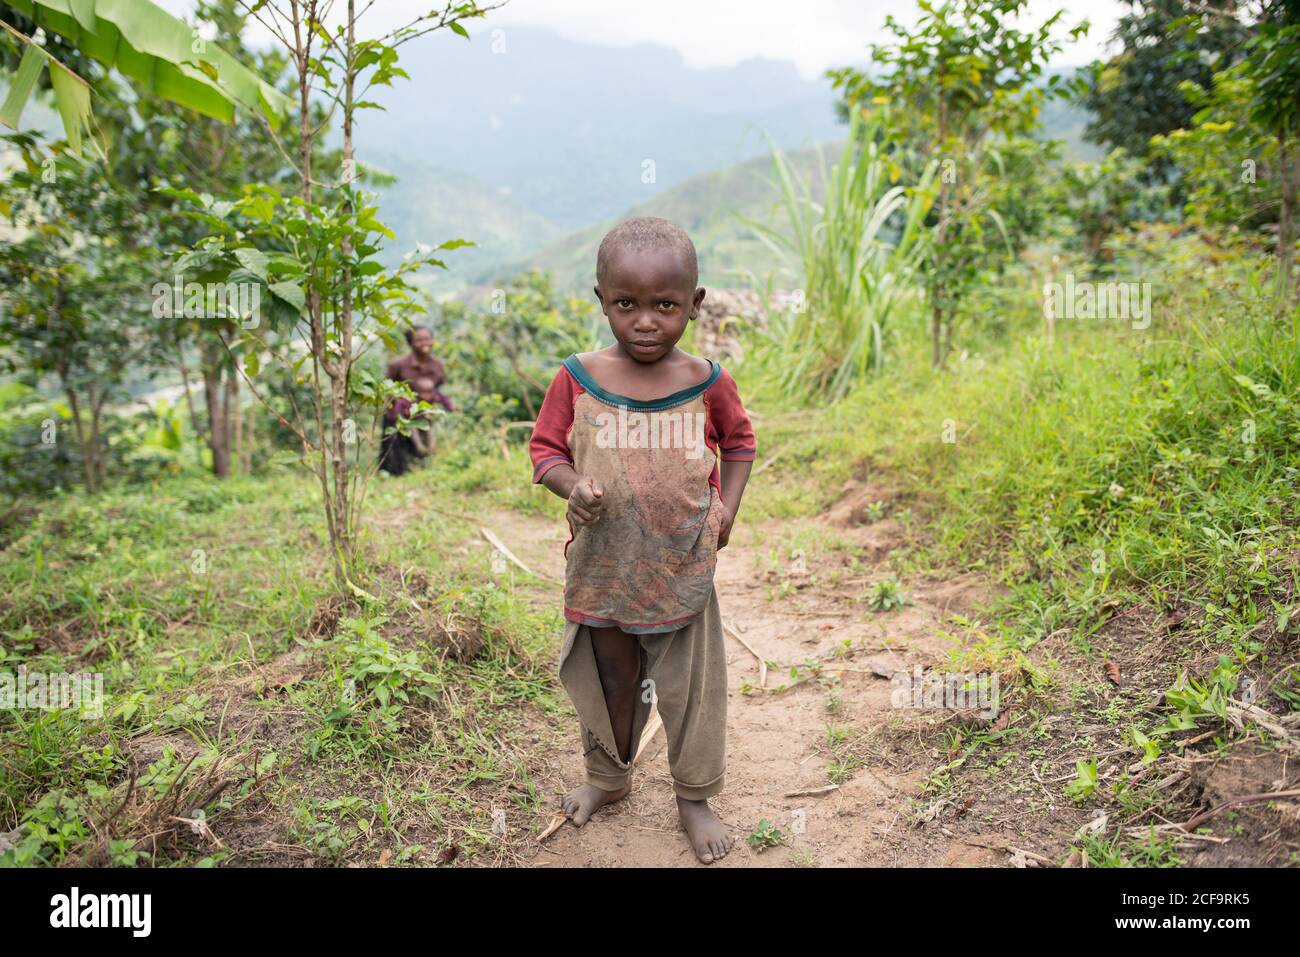 Uganda - Novembre 26 2016: Toddler africano calvo che guarda la macchina fotografica mentre cammina sulla strada sporca fuori del villaggio Foto Stock